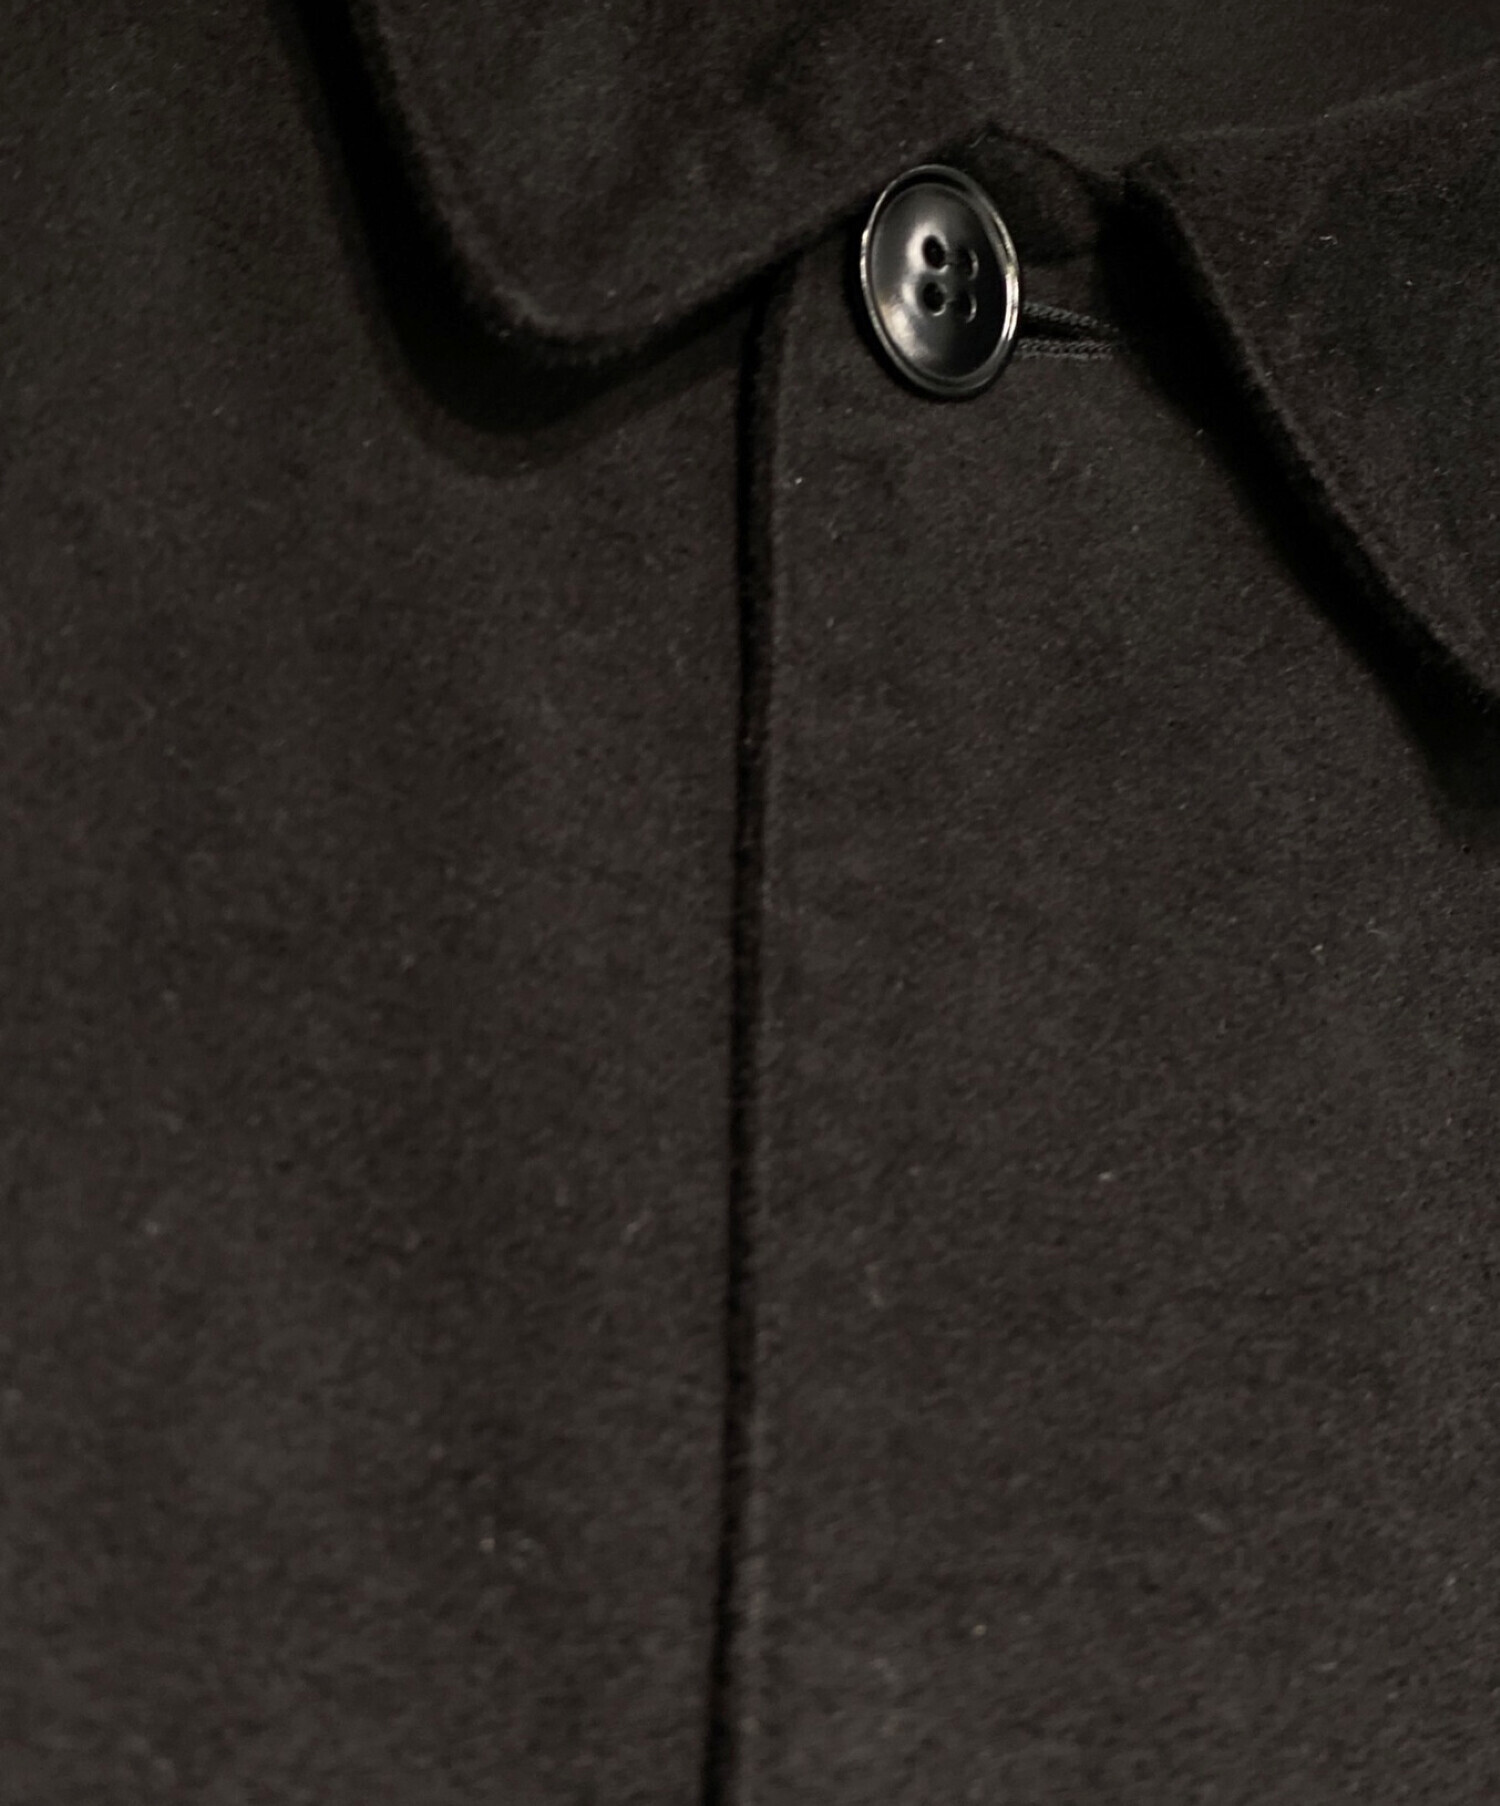 COMOLI (コモリ) モールスキンジャケット ブラック サイズ:3